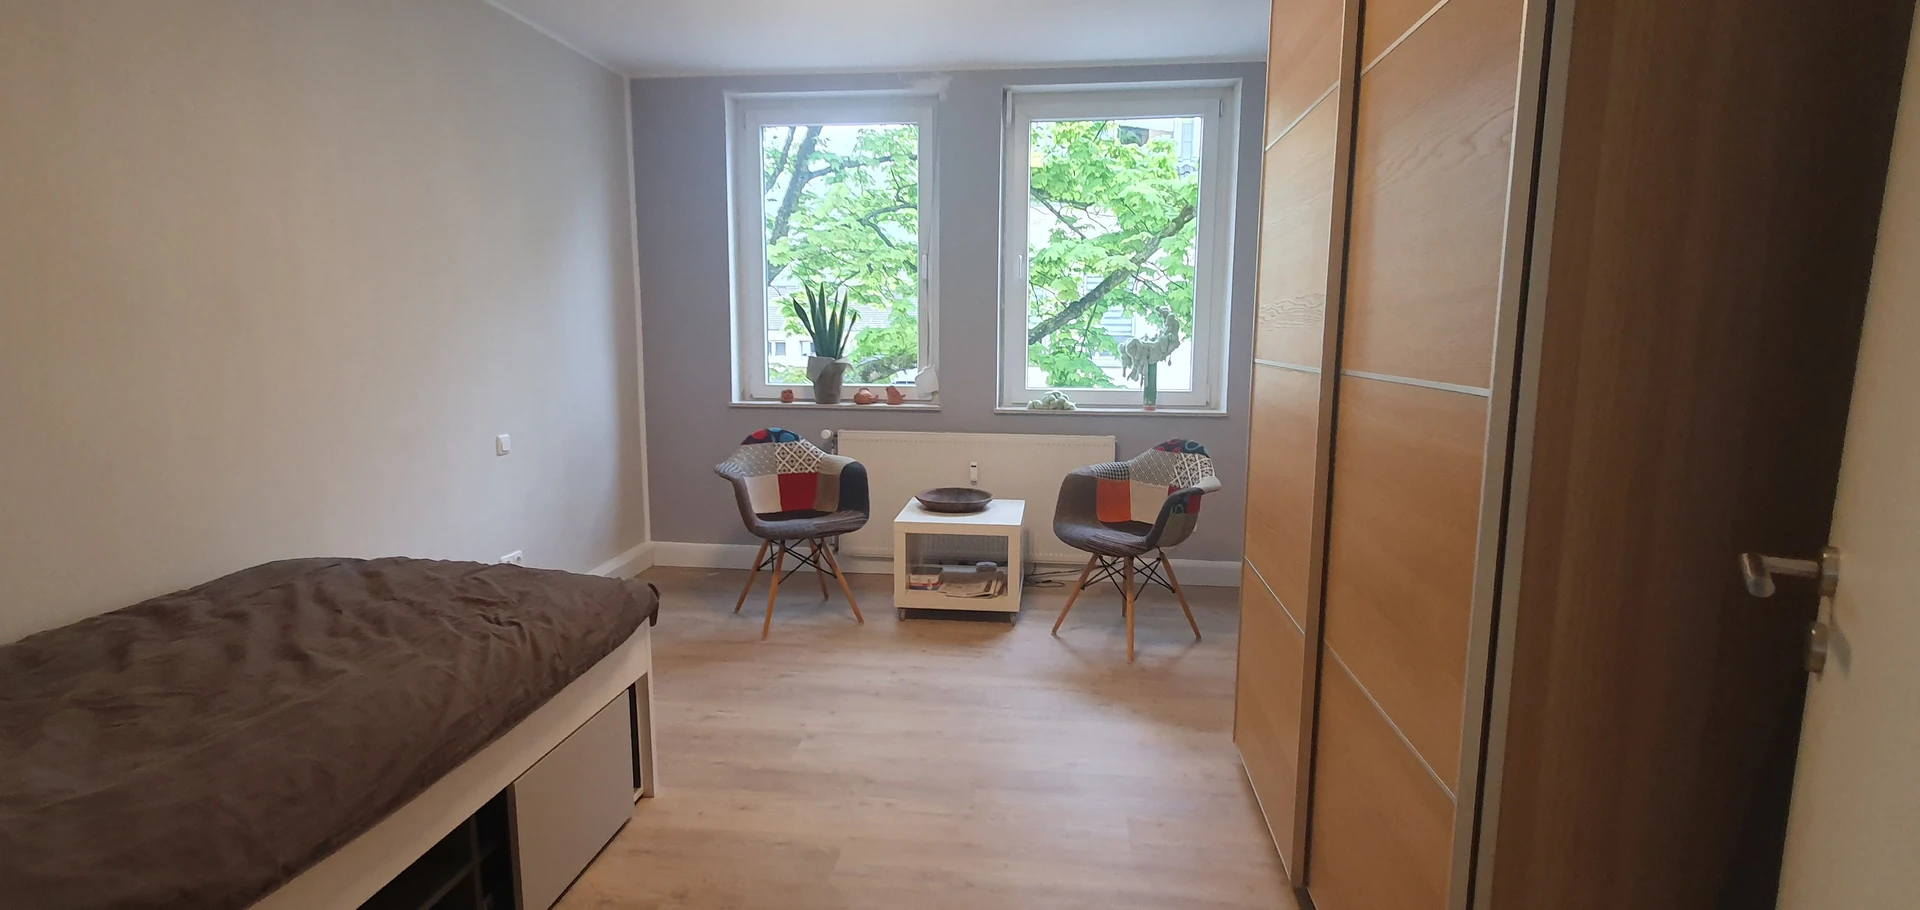 Quarto para alugar num apartamento partilhado em Mülheim An Der Ruhr